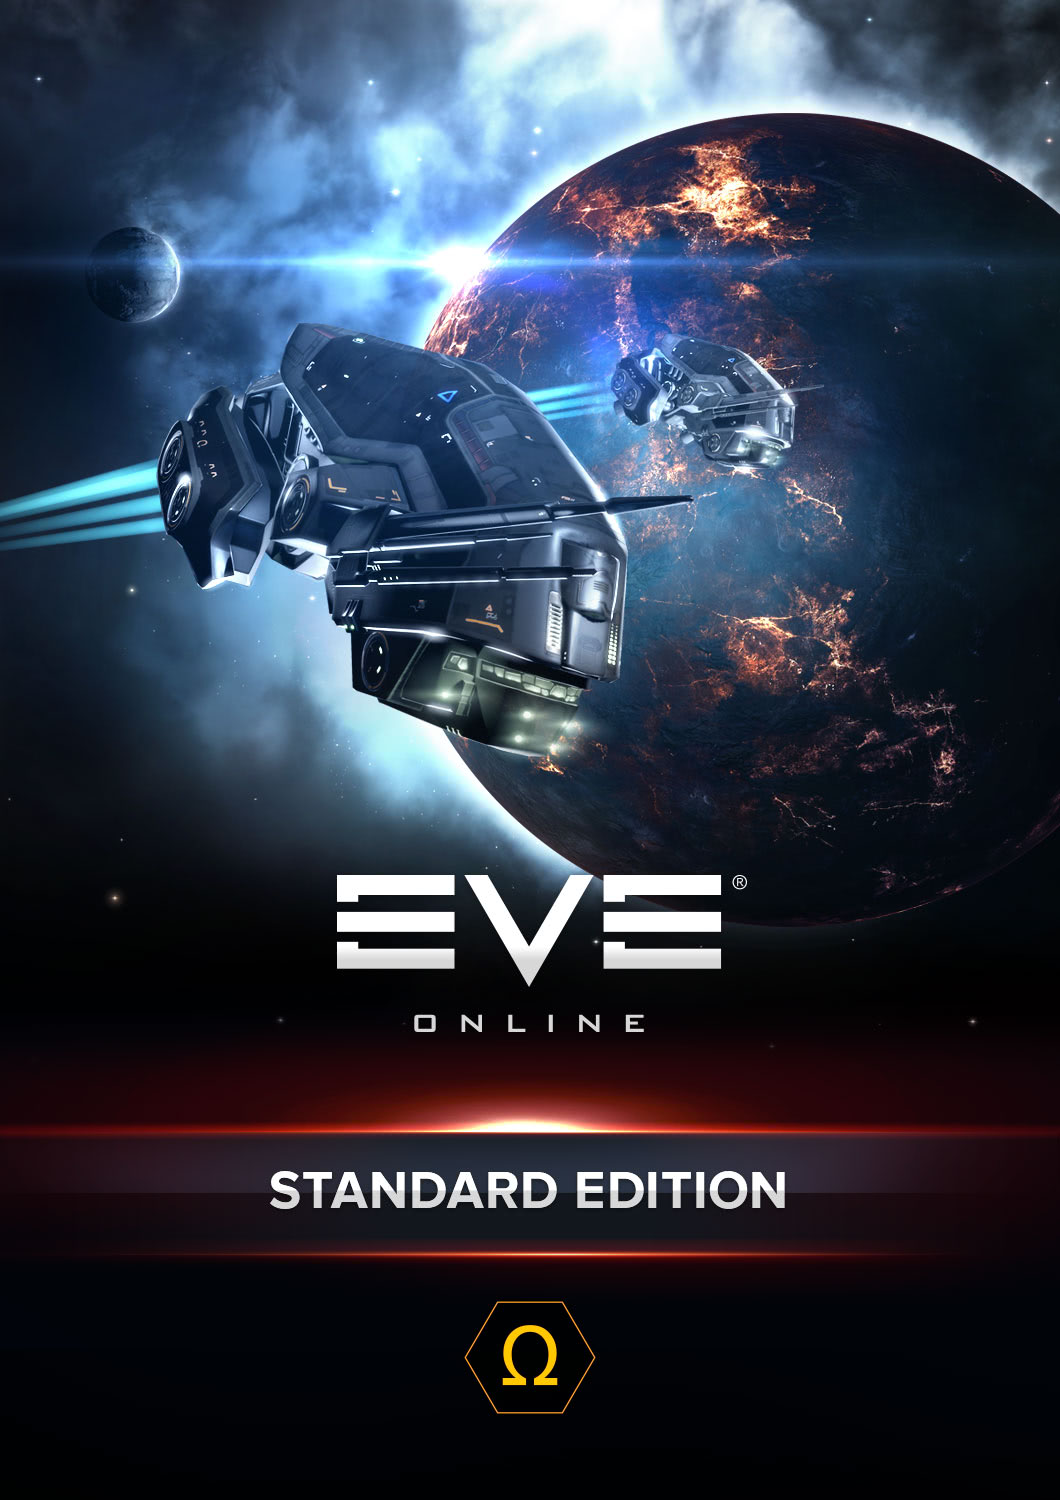 Eve купить омега статус. Eve on line плакат. Eve Dust 514.